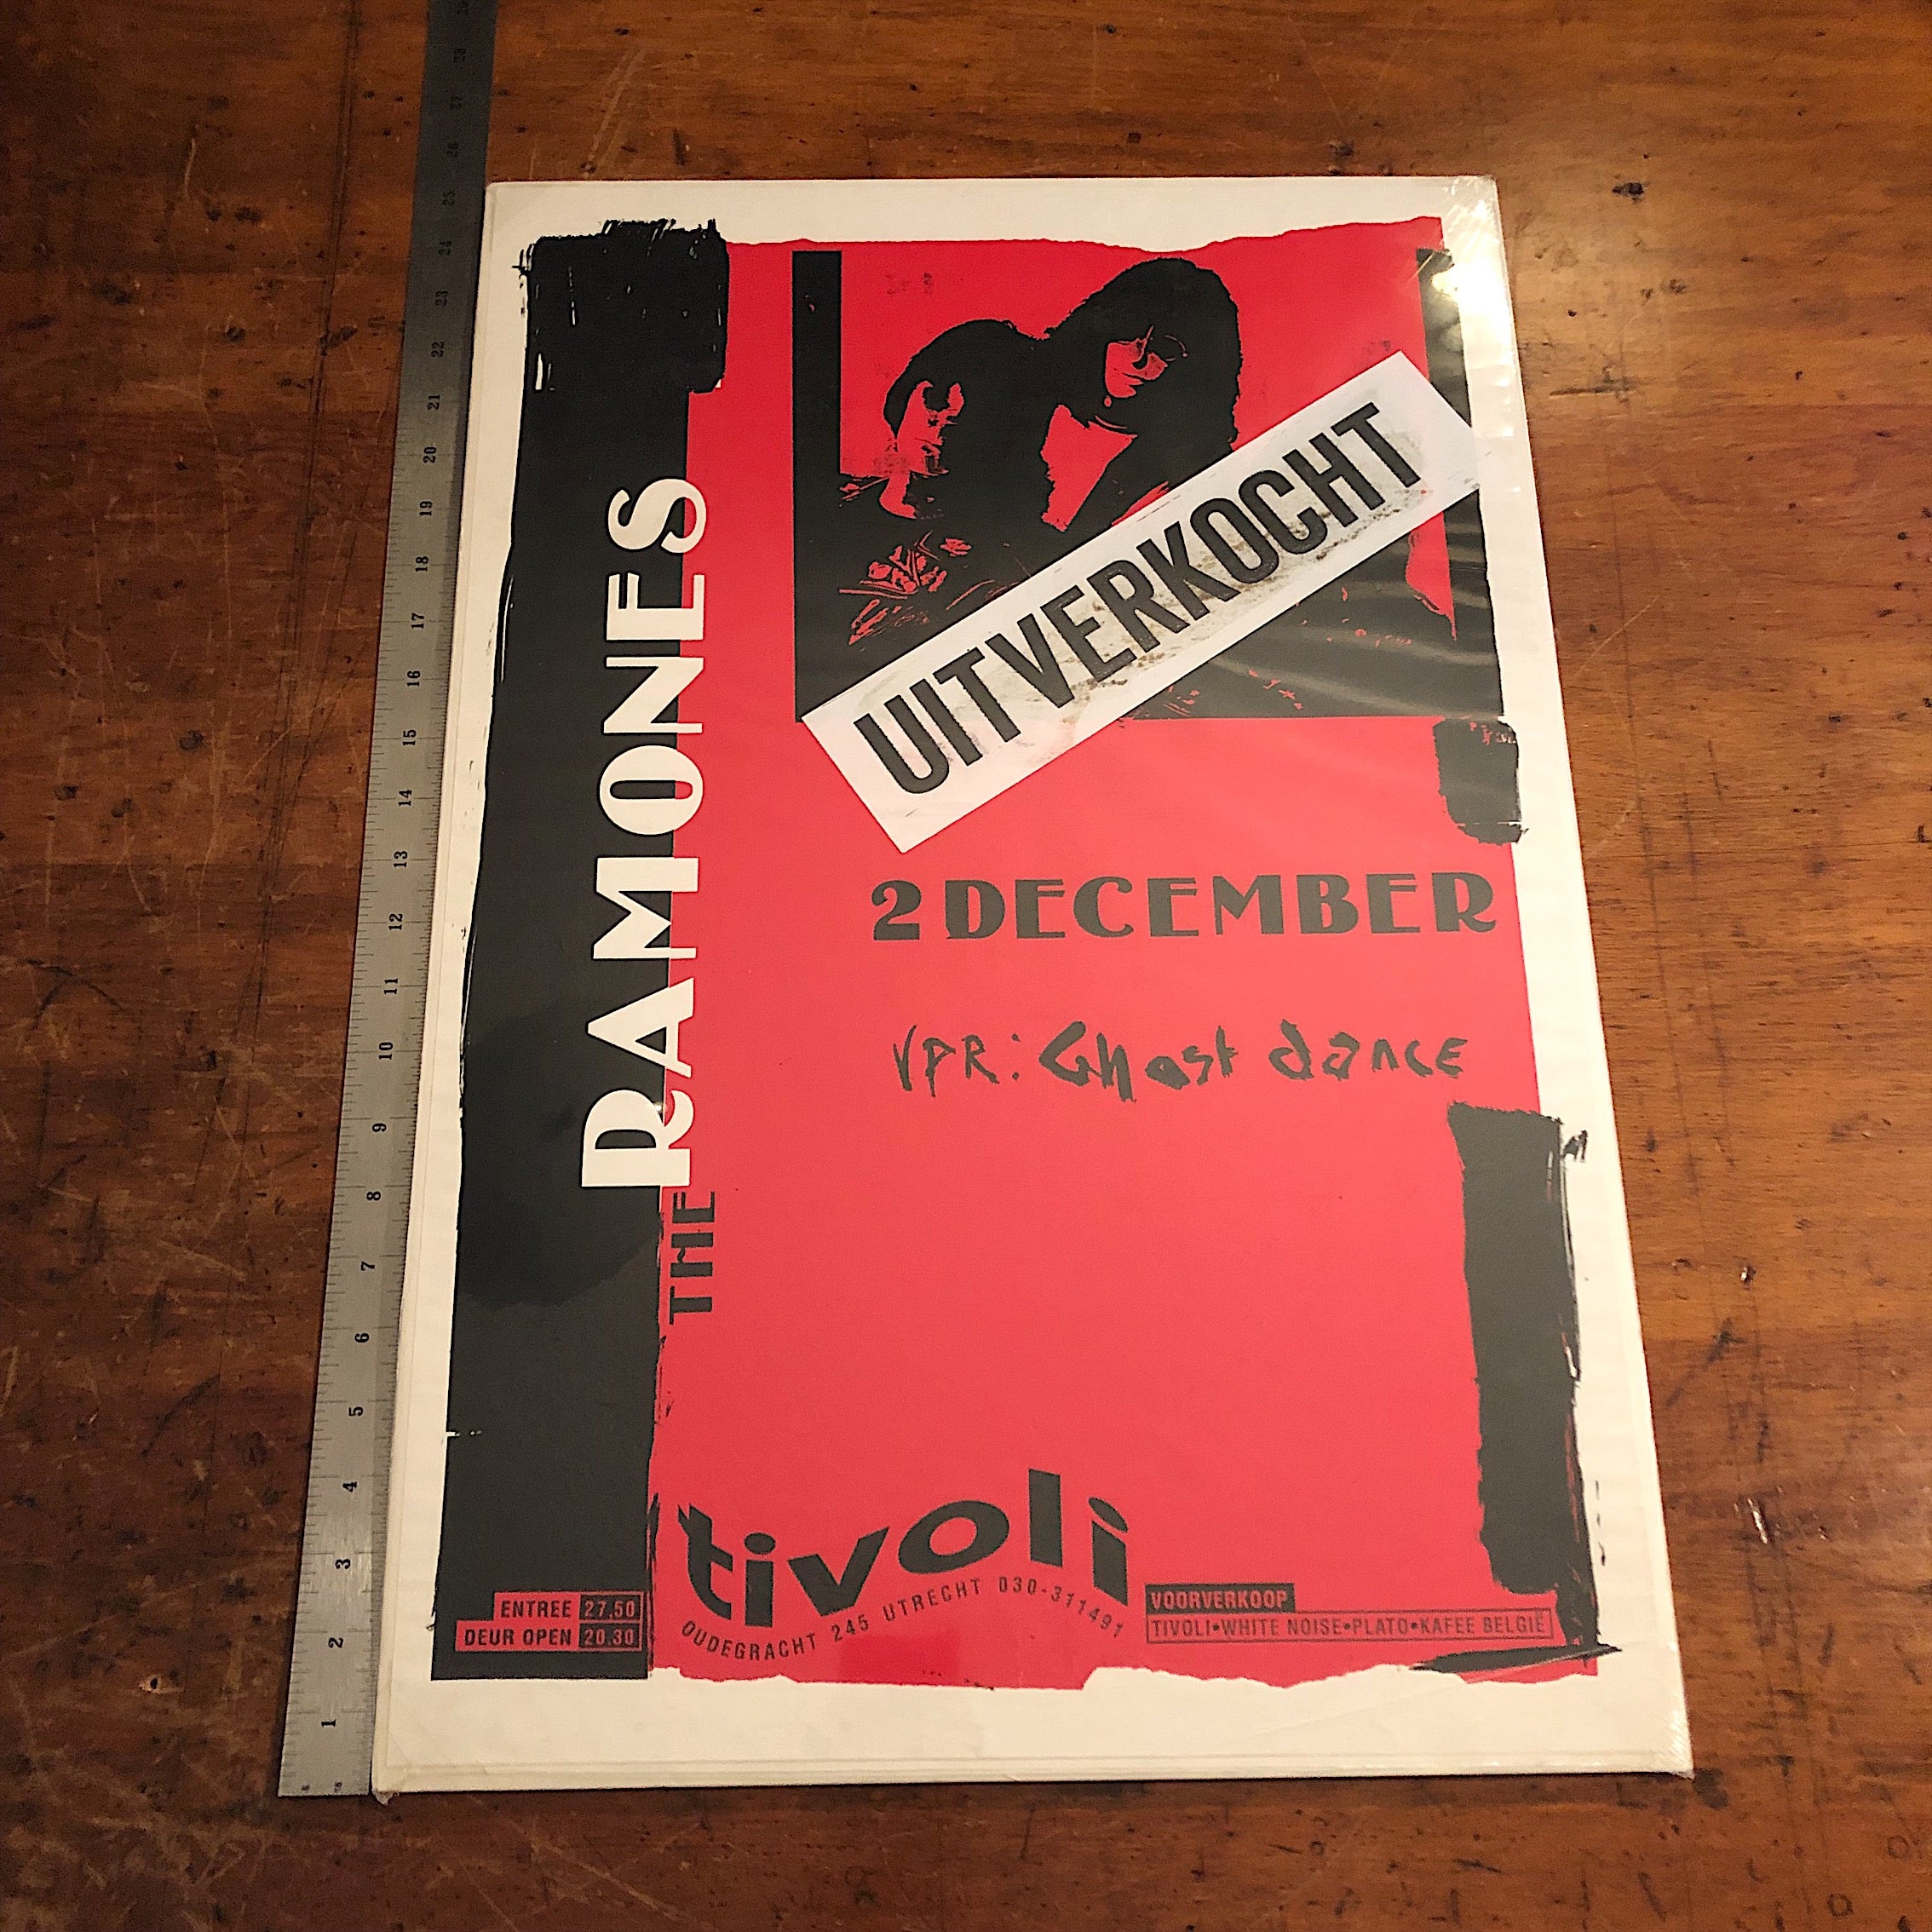 Rare Ramones Concert Poster from Netherlands - 1989 - Utrecht - Vintage Rock Memorabilia - Punk Rock 